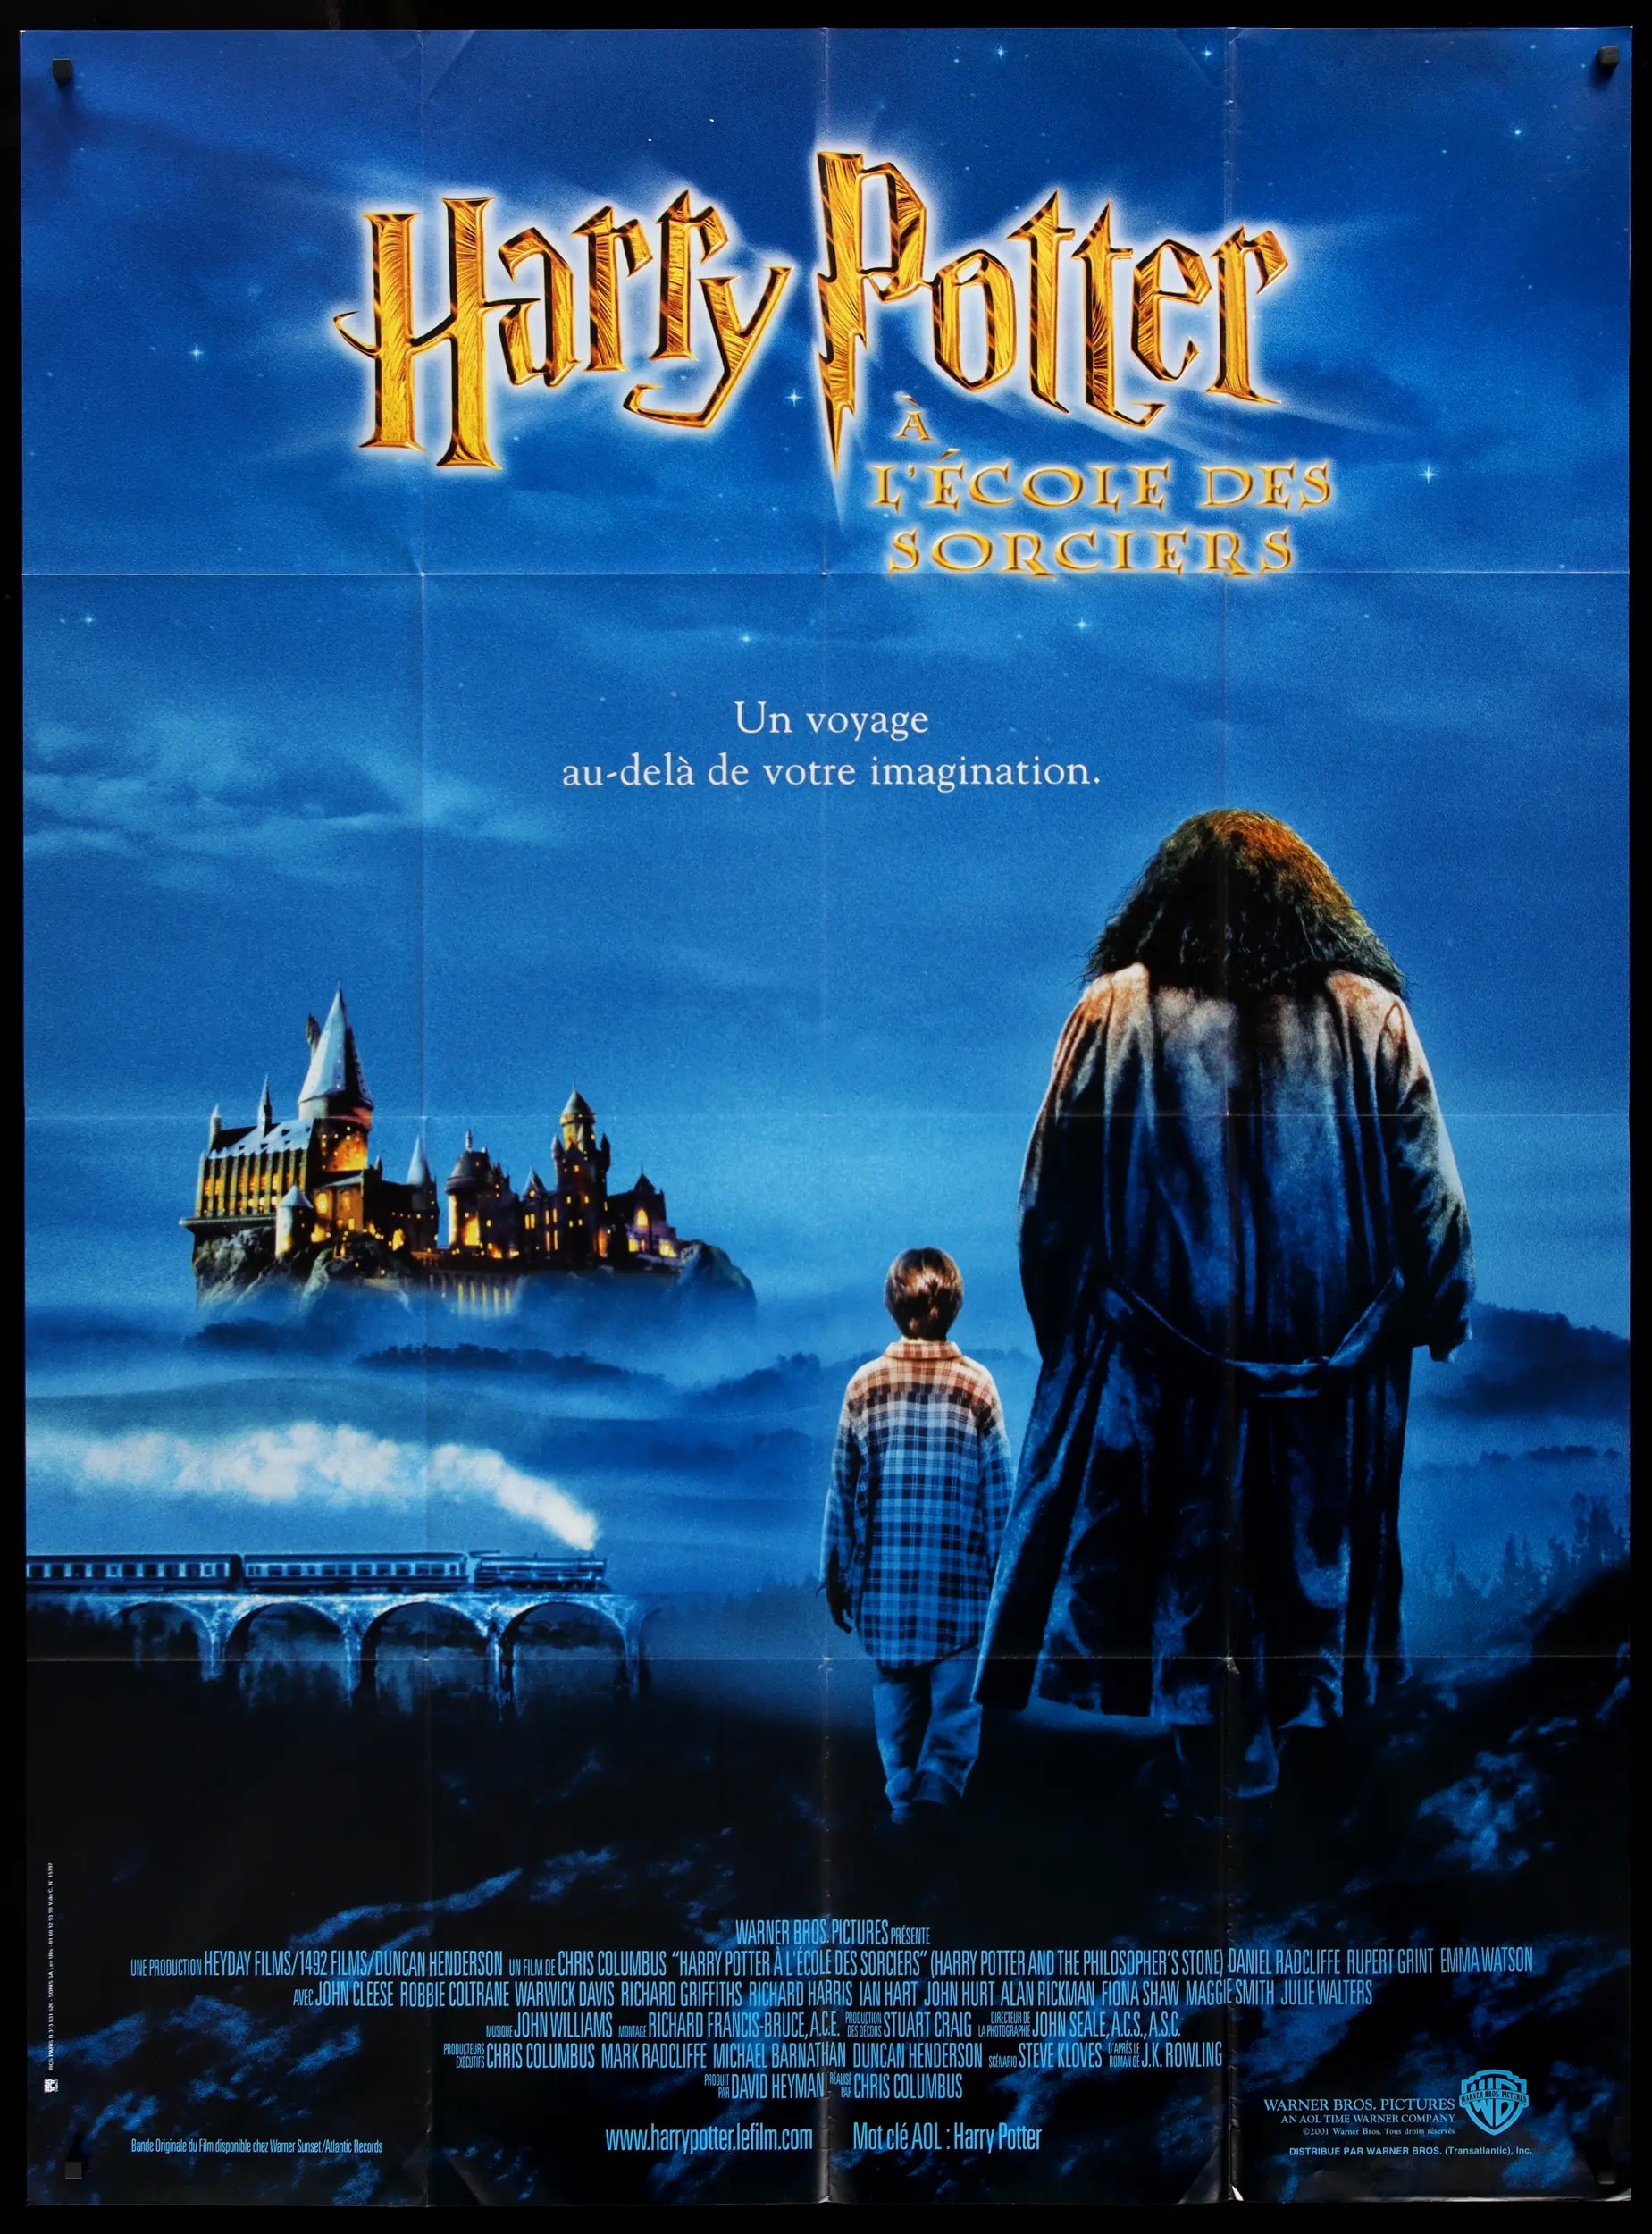 Póster de Harry Potter™ - Harry Potter y la piedra filosofal No1